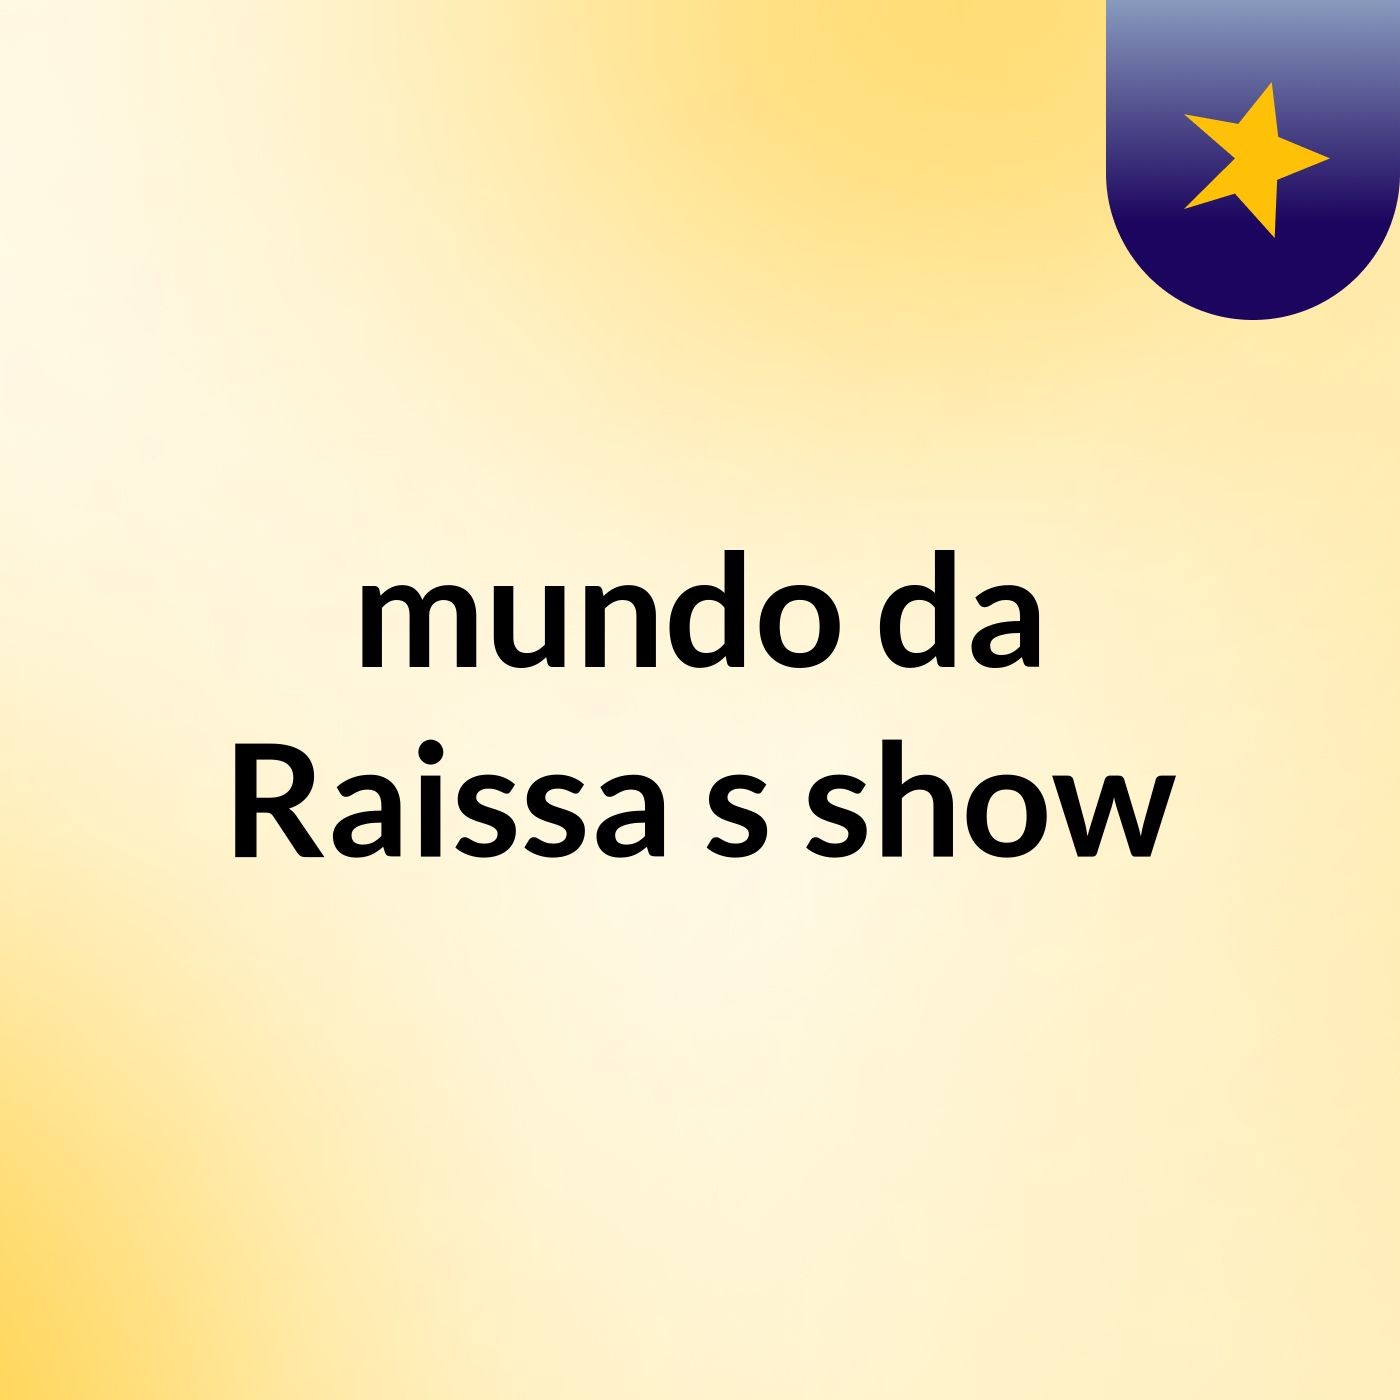 mundo da Raissa's show